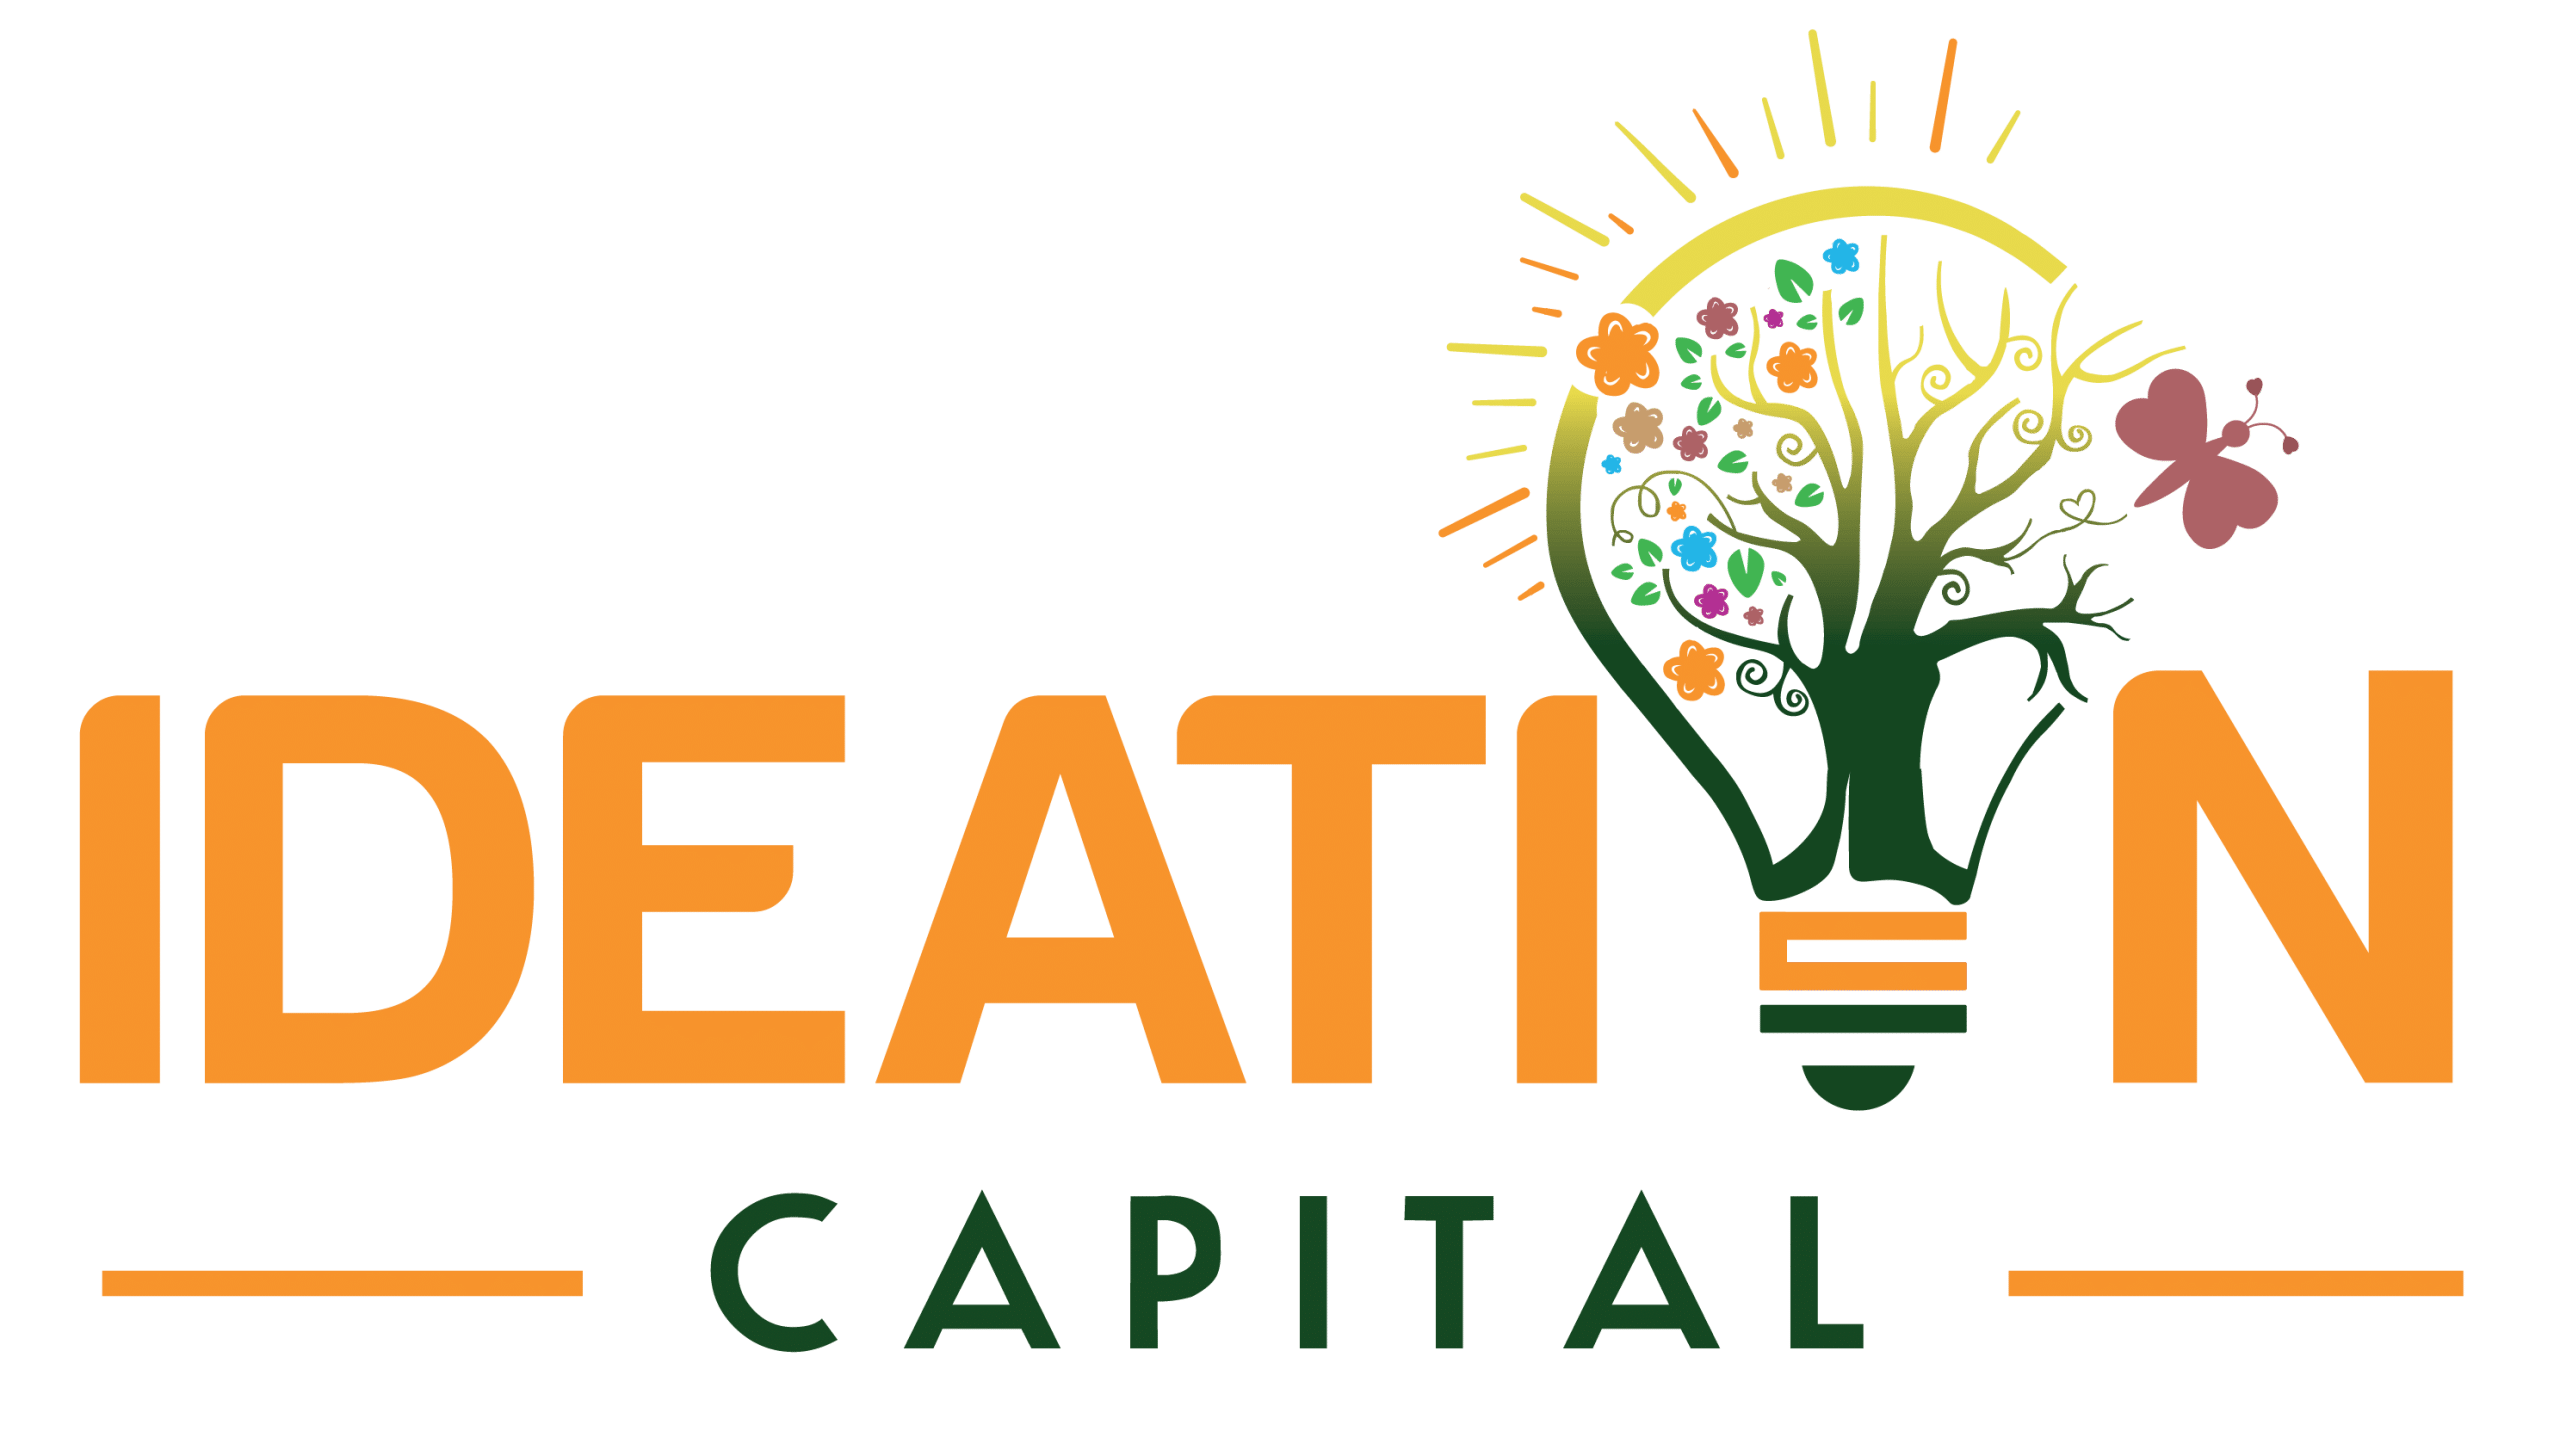 Ideation Capital company logo